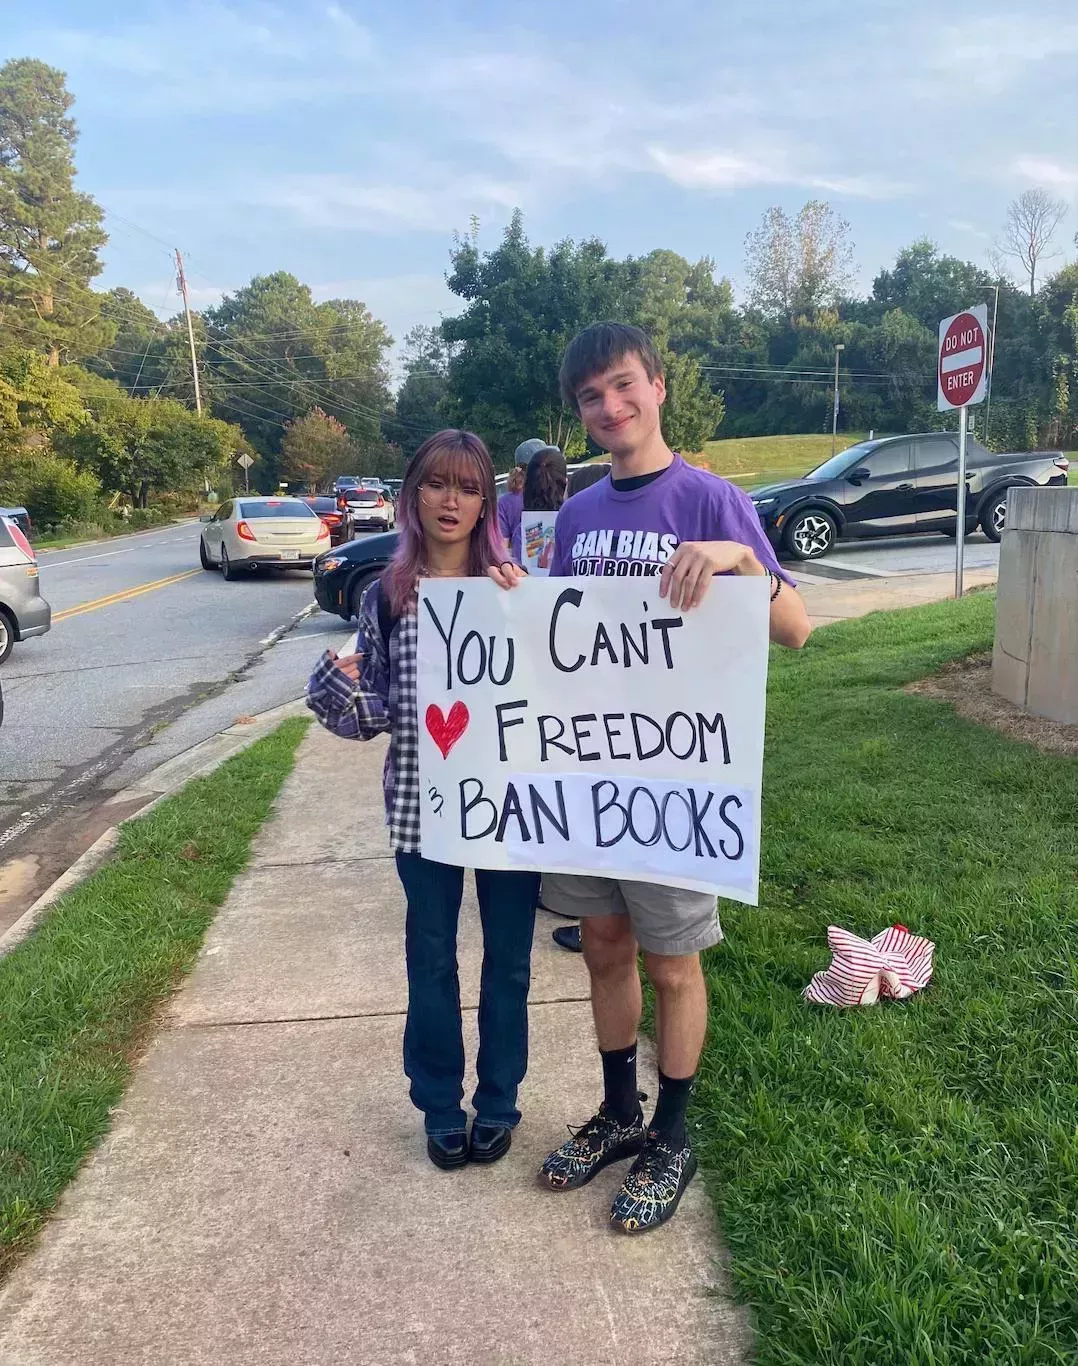 Una madre nos gritó mientras protestábamos contra la prohibición de libros en nuestras escuelas